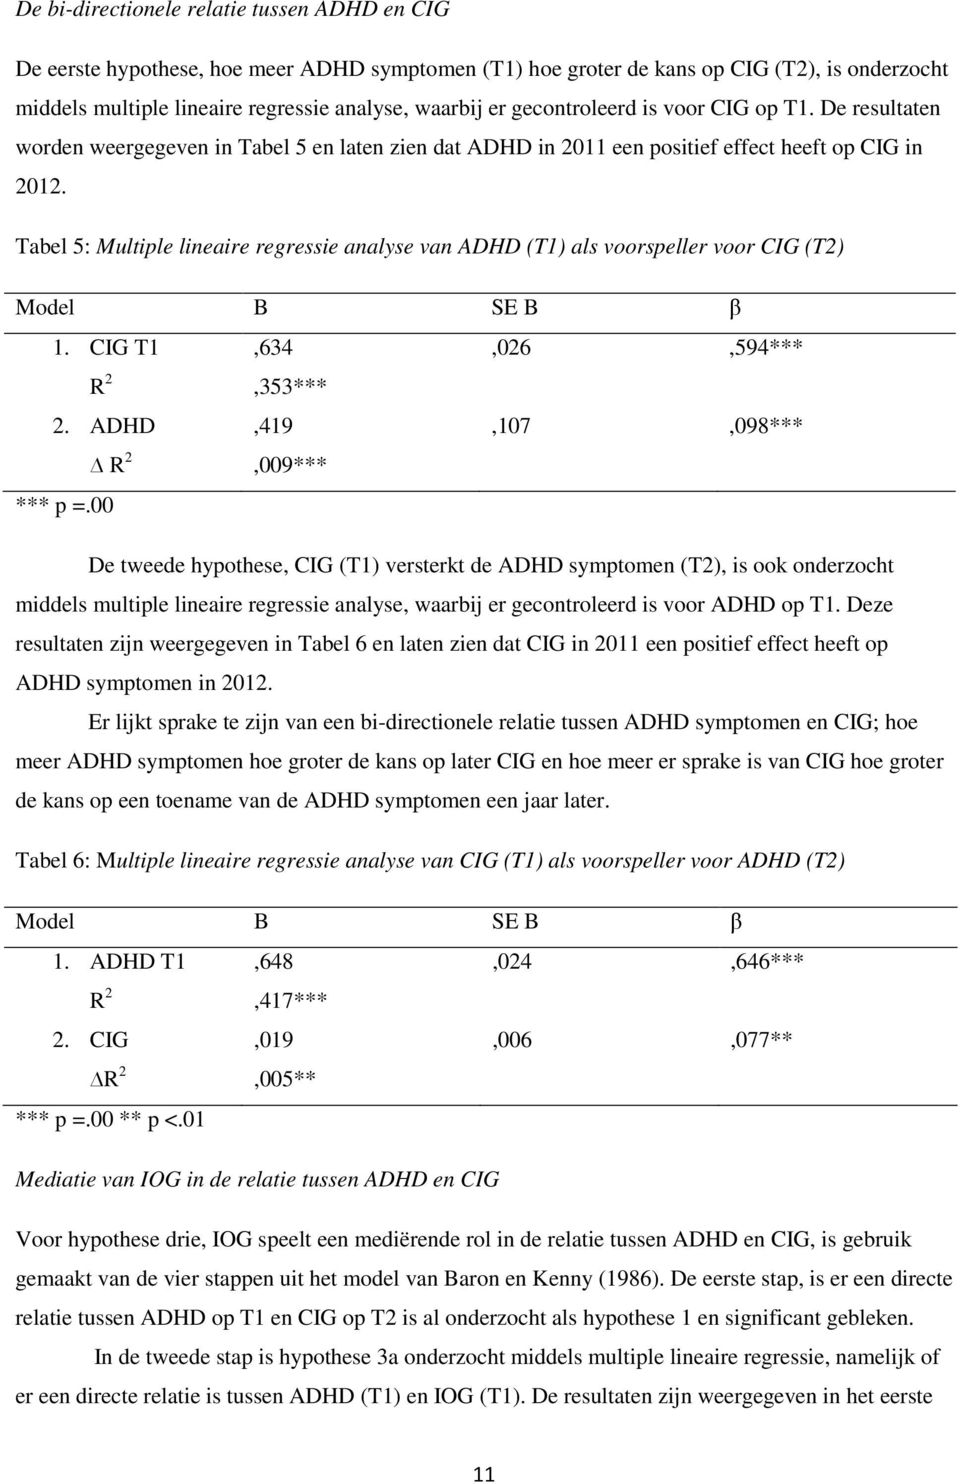 Tabel 5: Multiple lineaire regressie analyse van ADHD (T1) als voorspeller voor CIG (T2) Model B SE B β 1. CIG T1 R 2,634,353*** 2. ADHD R 2,419,009*** *** p =.